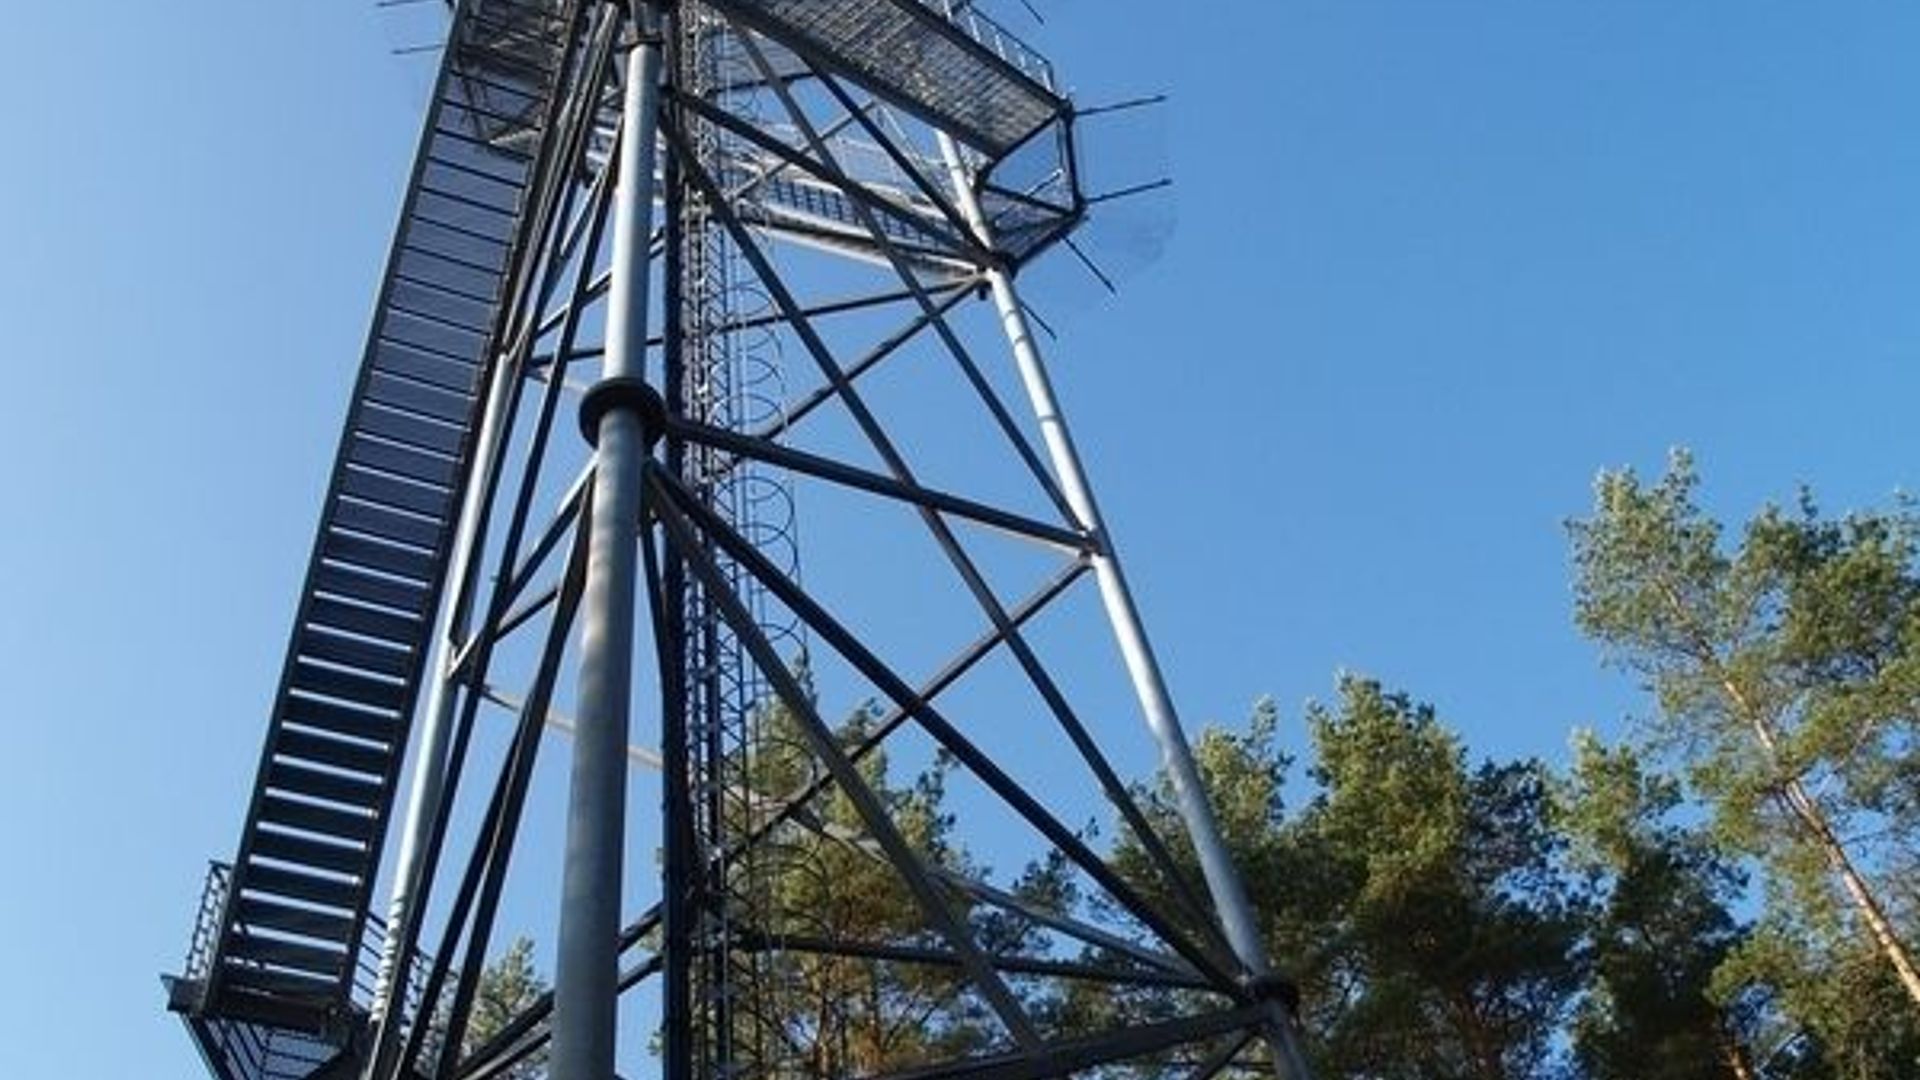 Šiliniškių (Ginučių) apžvalgos bokštas